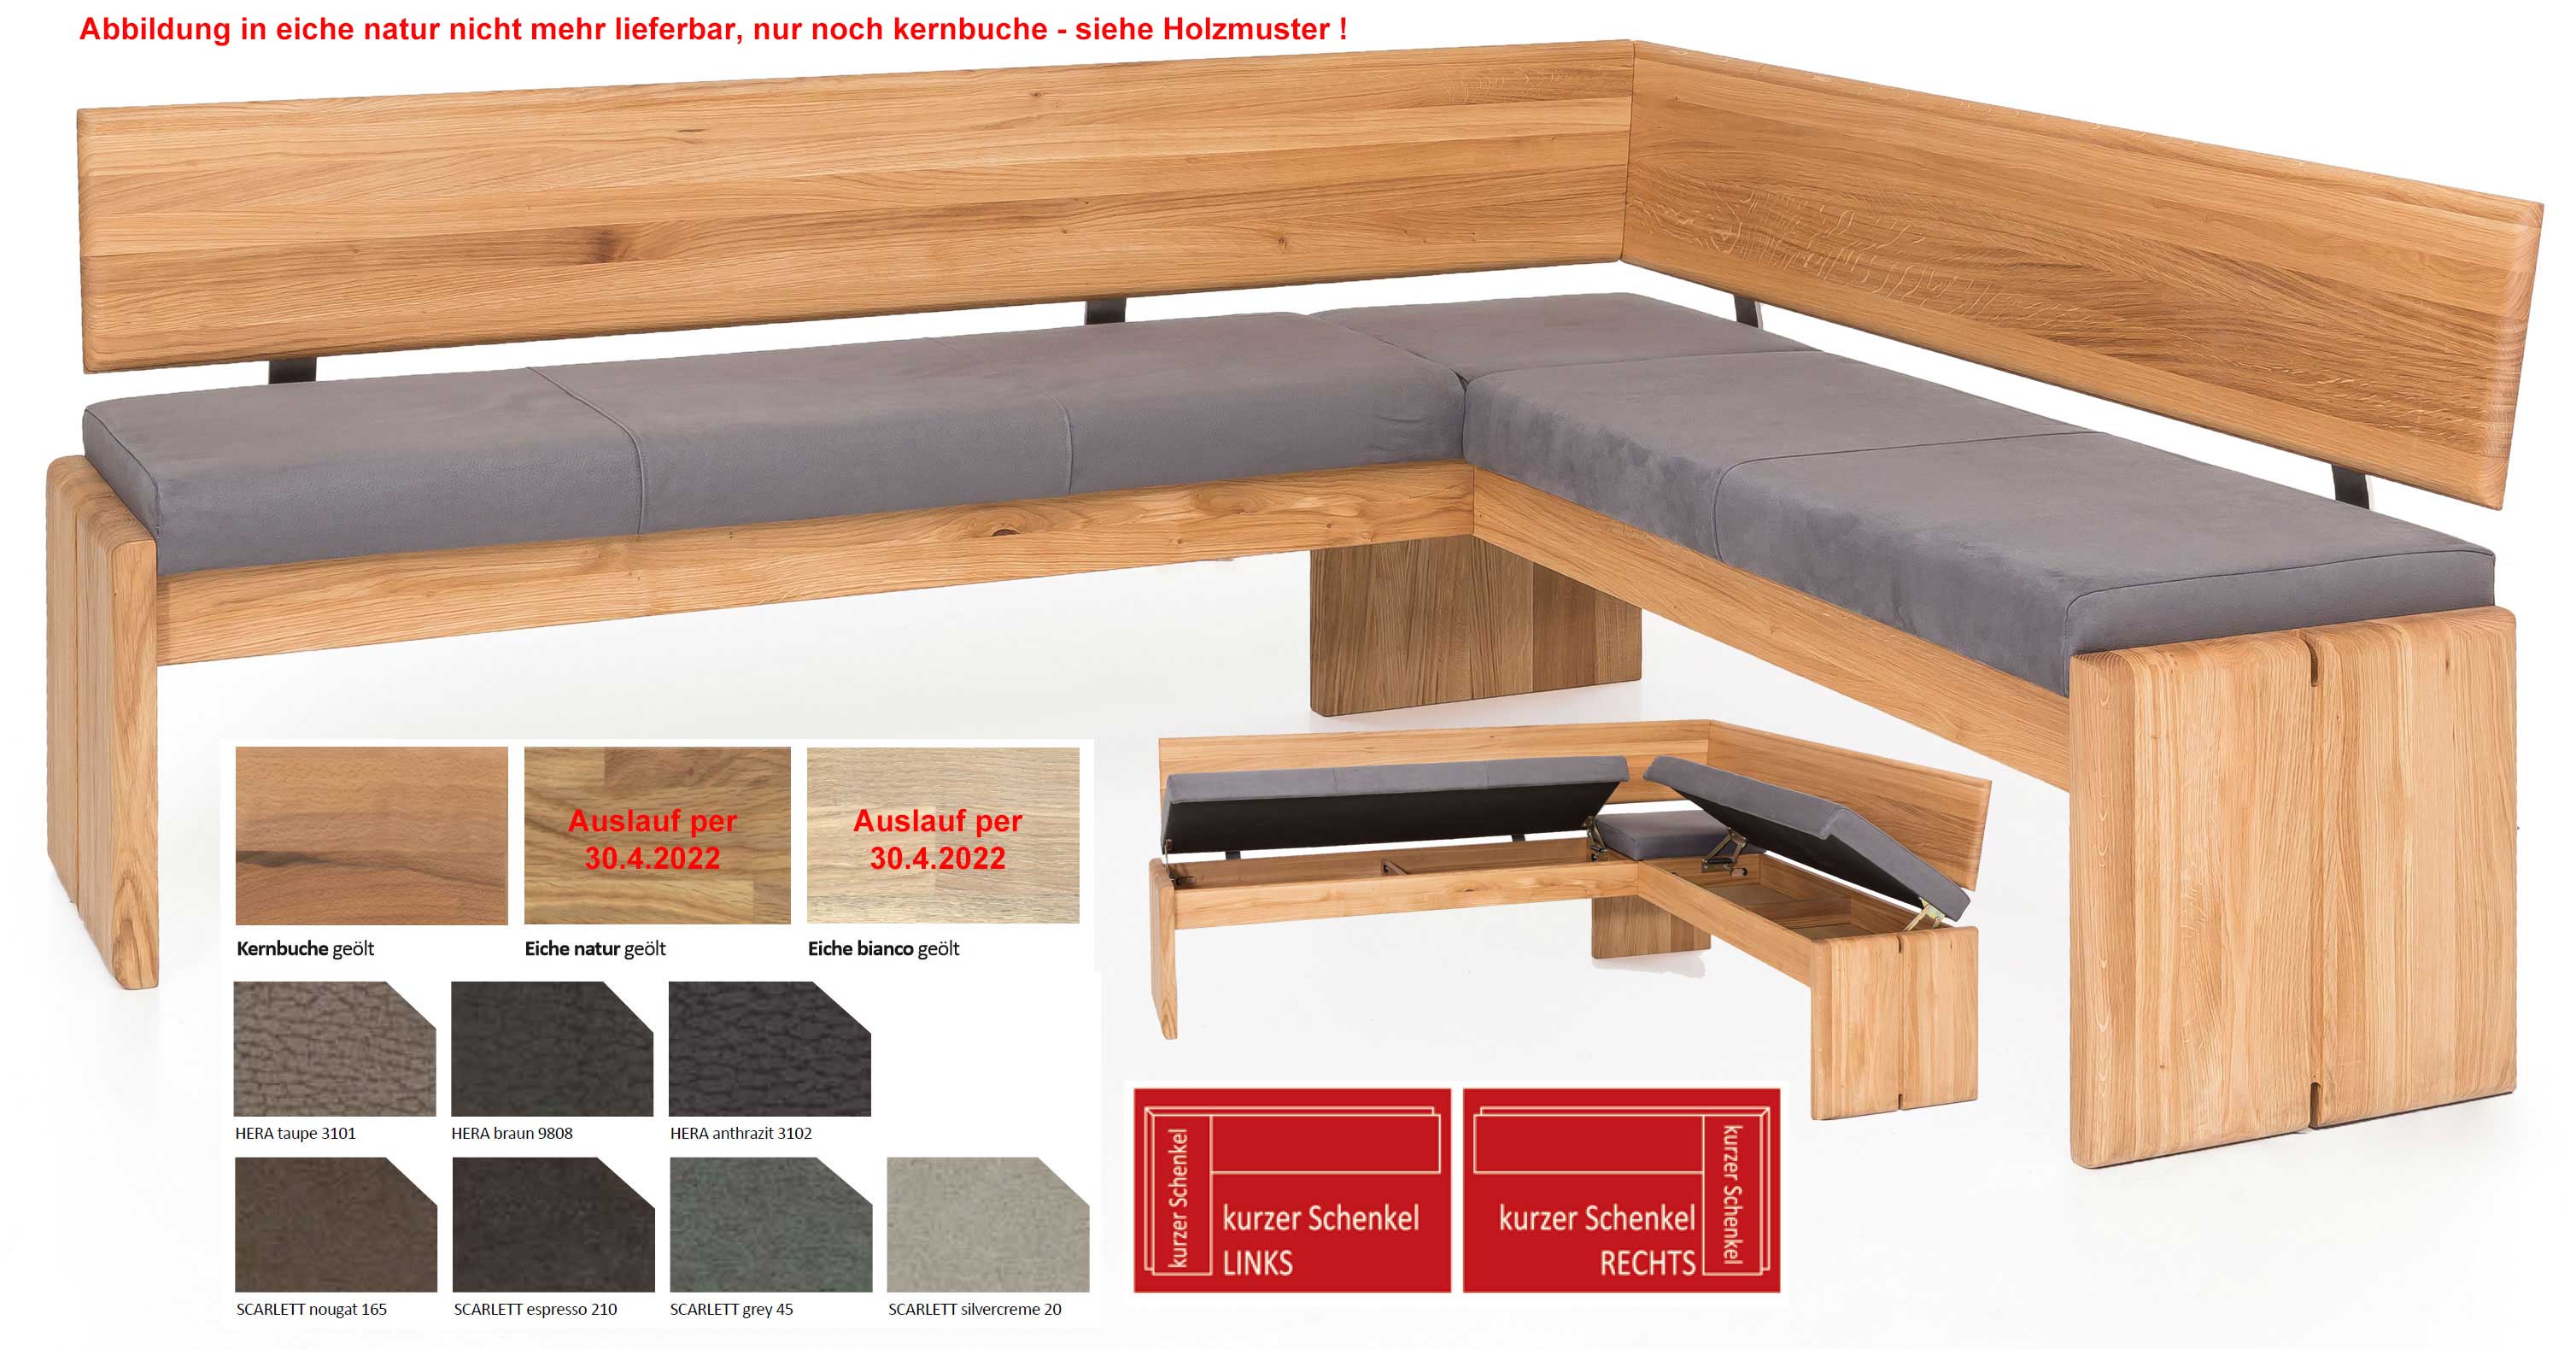 Standard Furniture Stockholm Eckbank Massiv Gepolstert Mit Stauraum